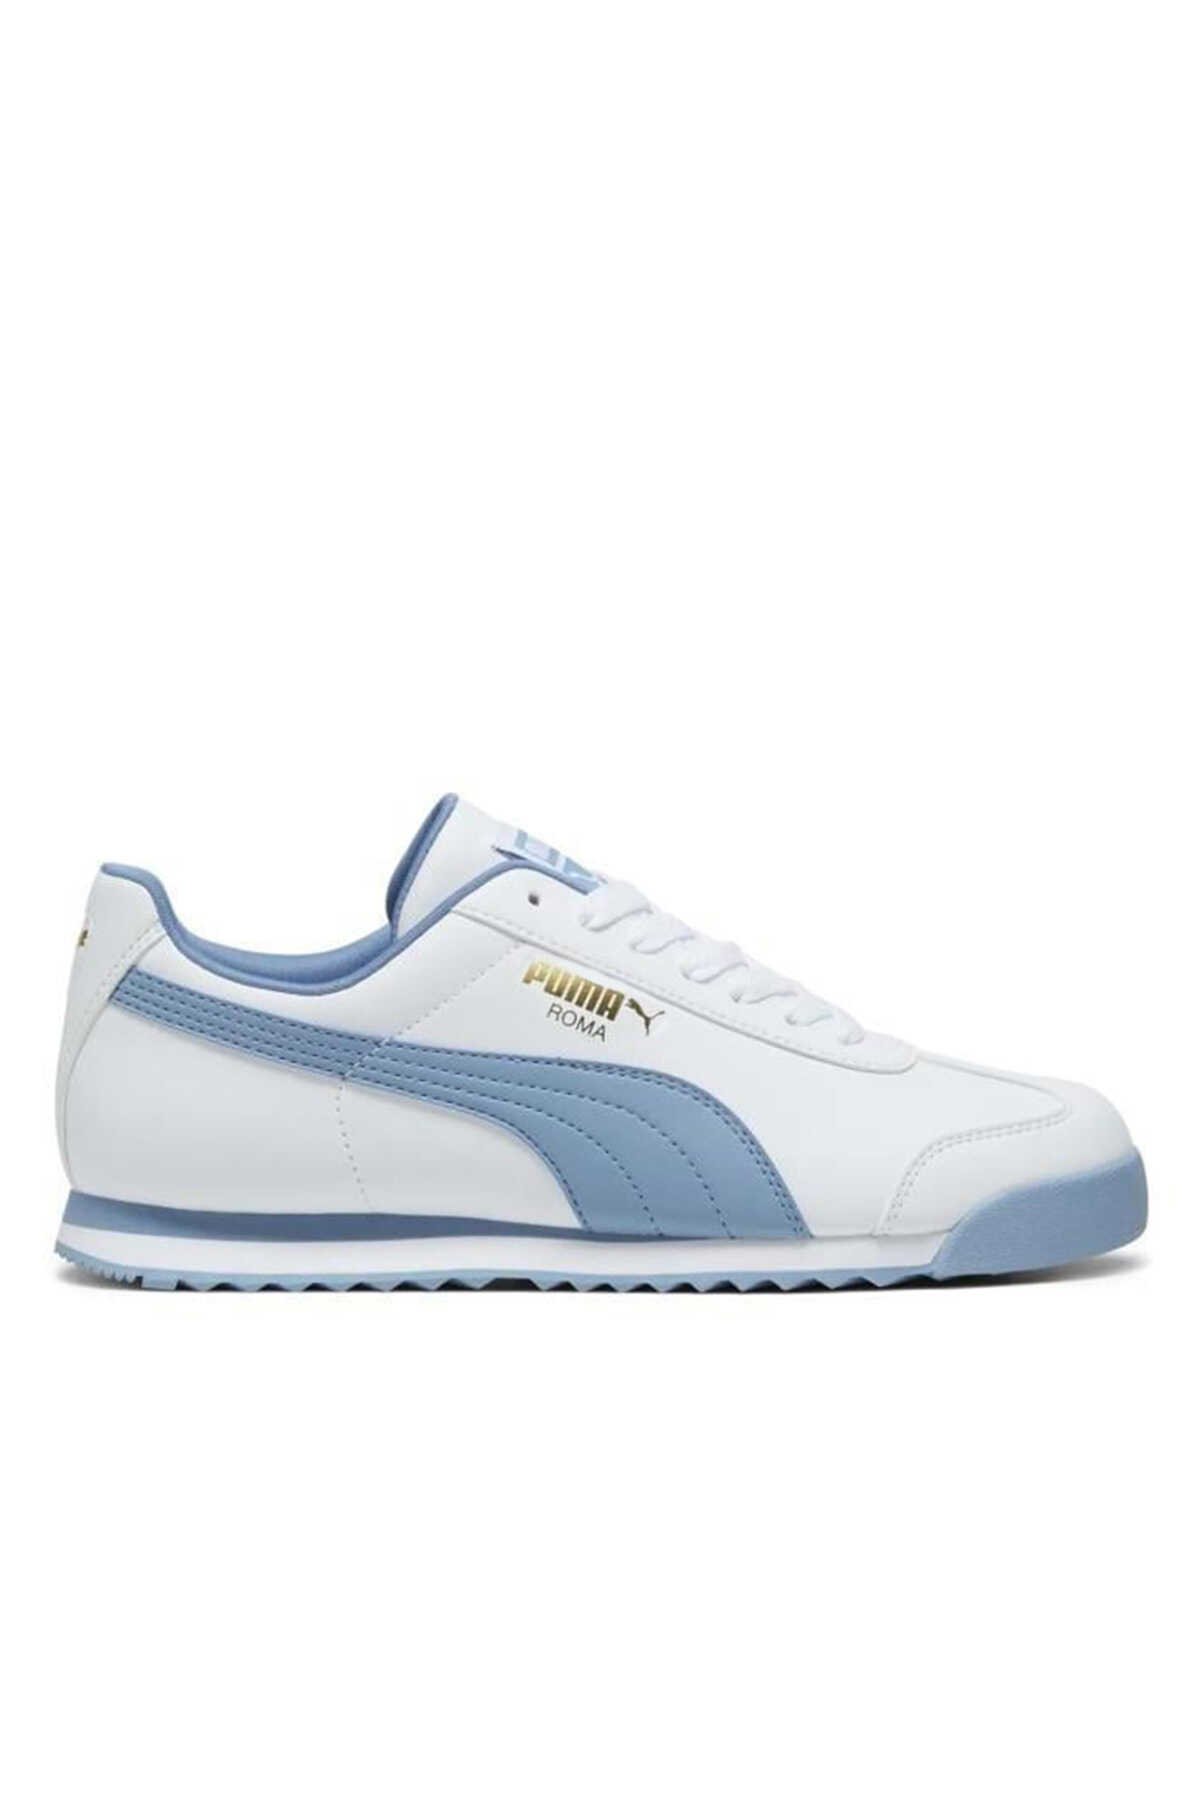 Puma - Puma Roma Basic Erkek Sneaker Ayakkabı Beyaz / Mavi